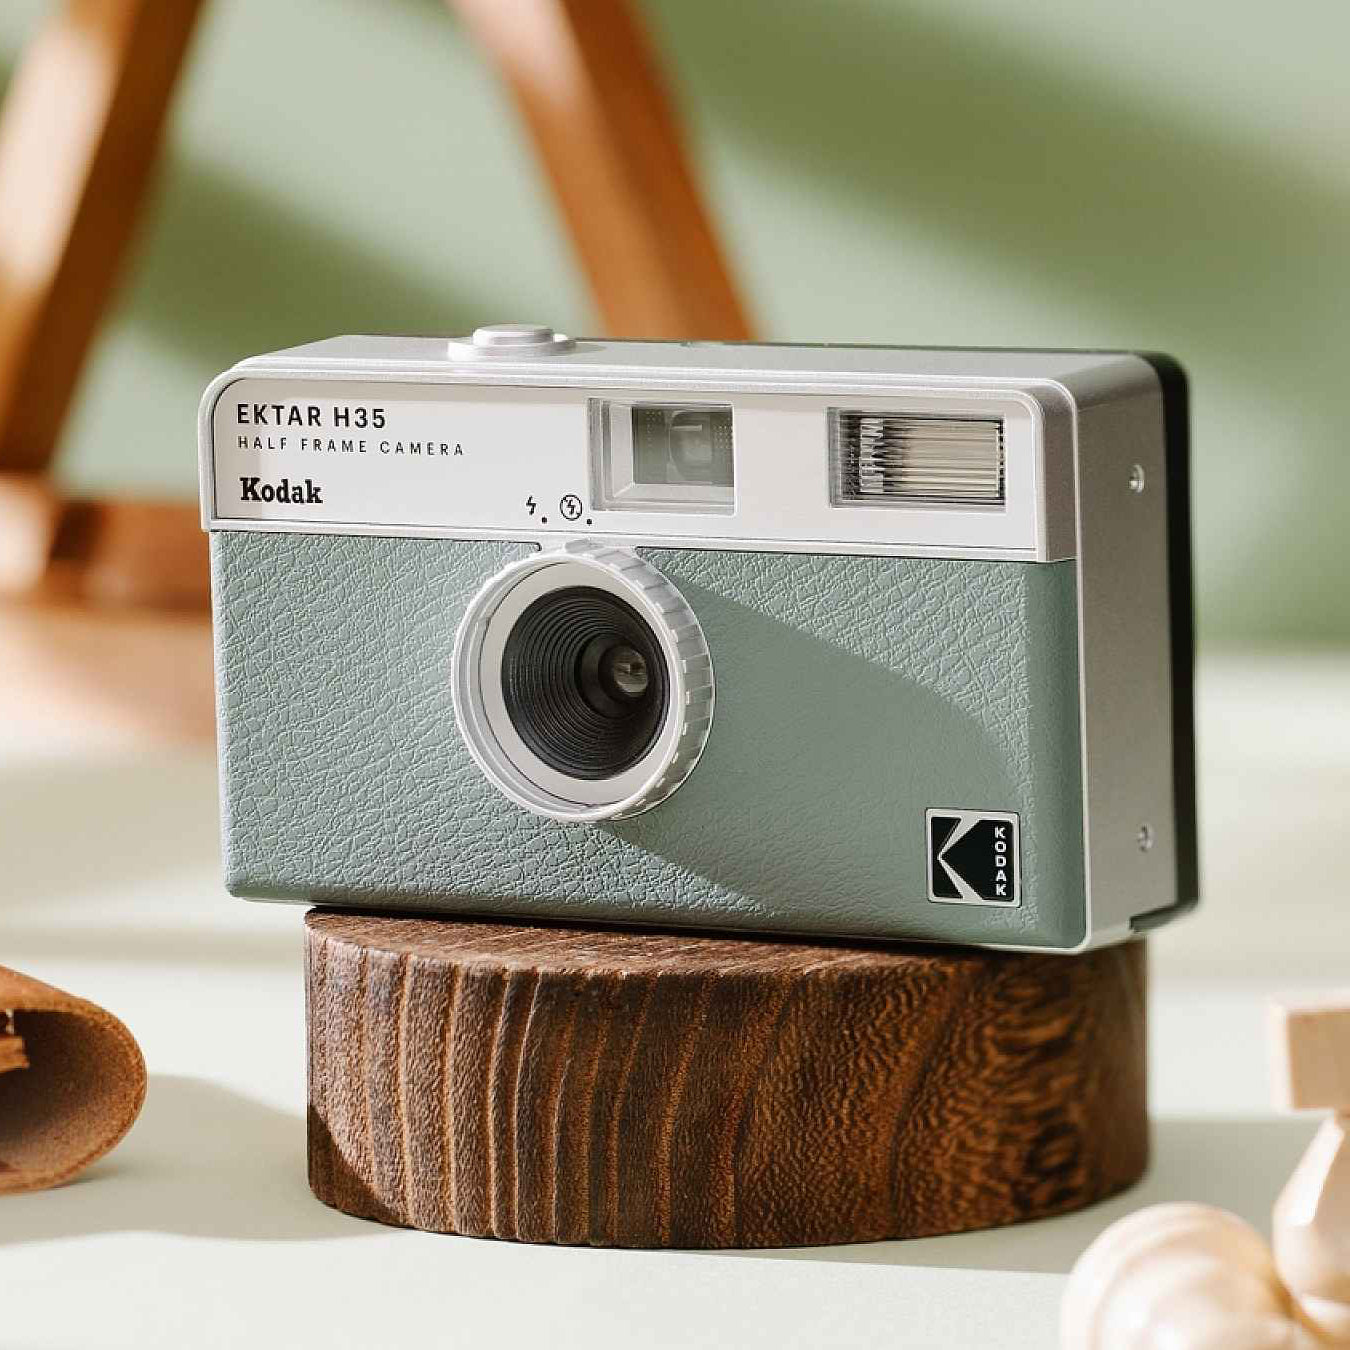 Have you shot the Kodak Ektar H35 half frame camera yet? What do